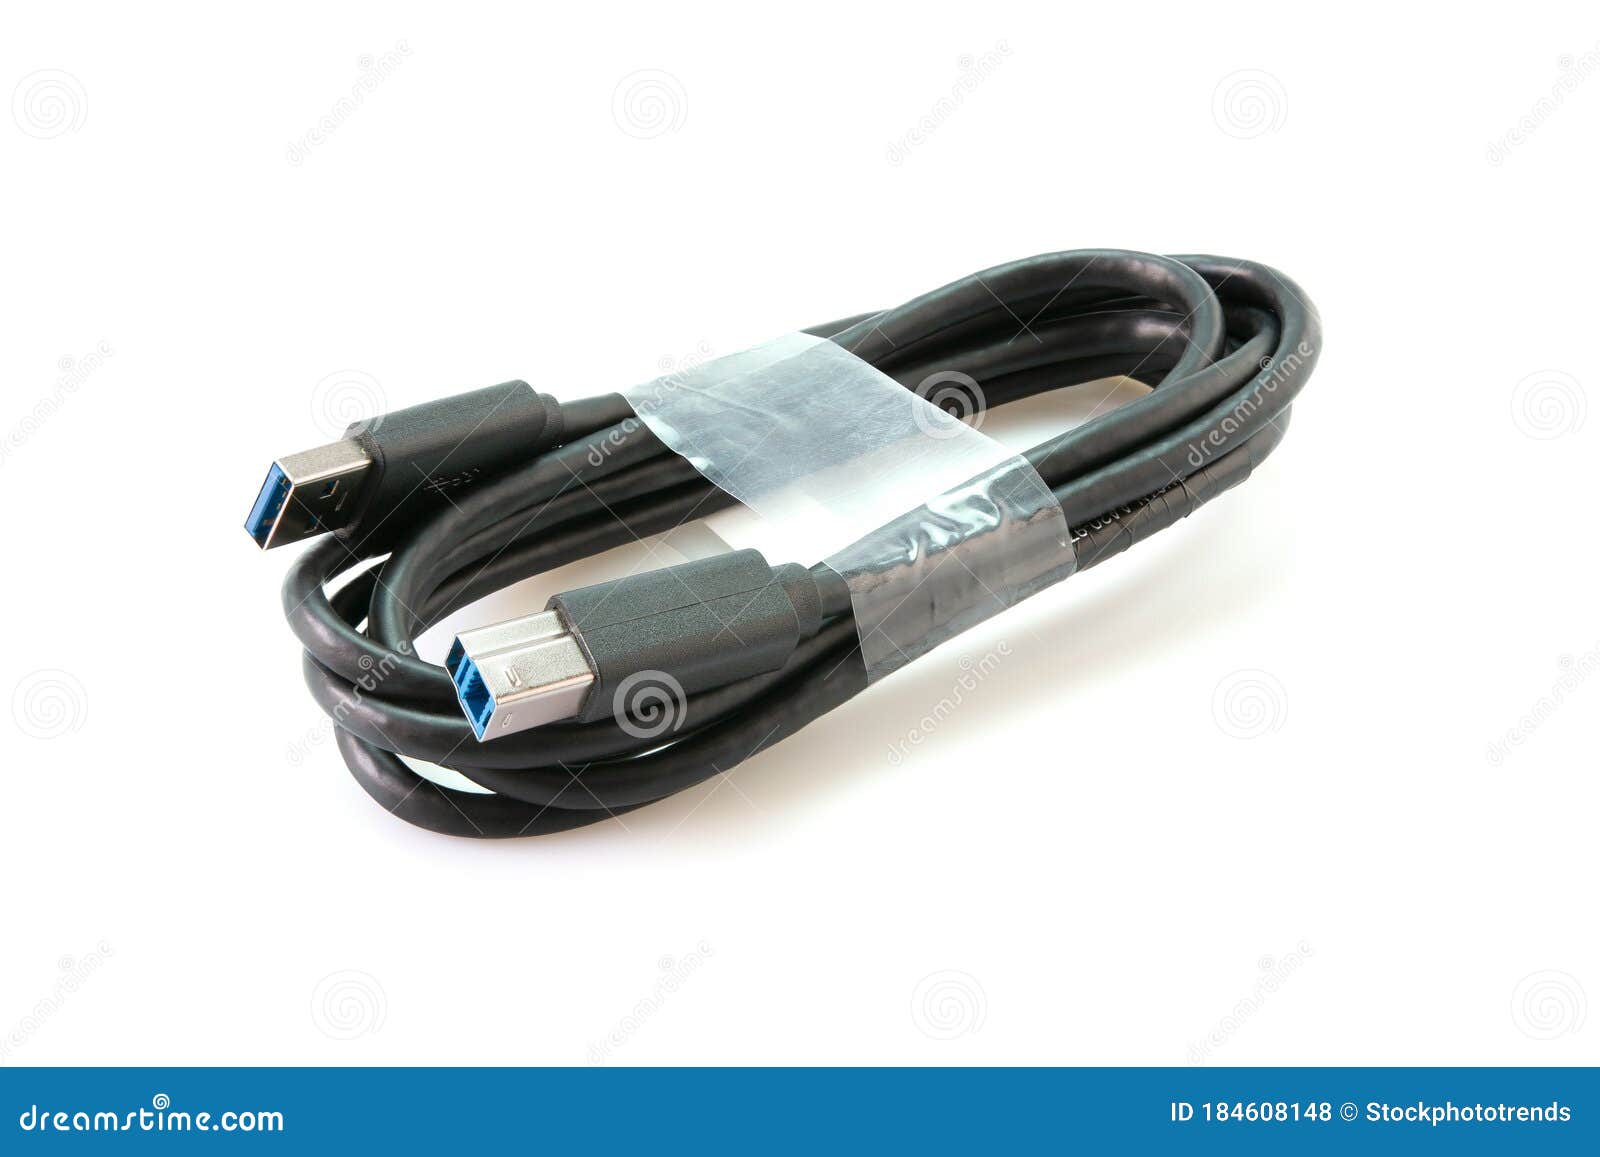 hovedvej lække dynamisk USB 3.0 Upstream Cable 6 Ft Stock Photo - Image of plug, black: 184608148